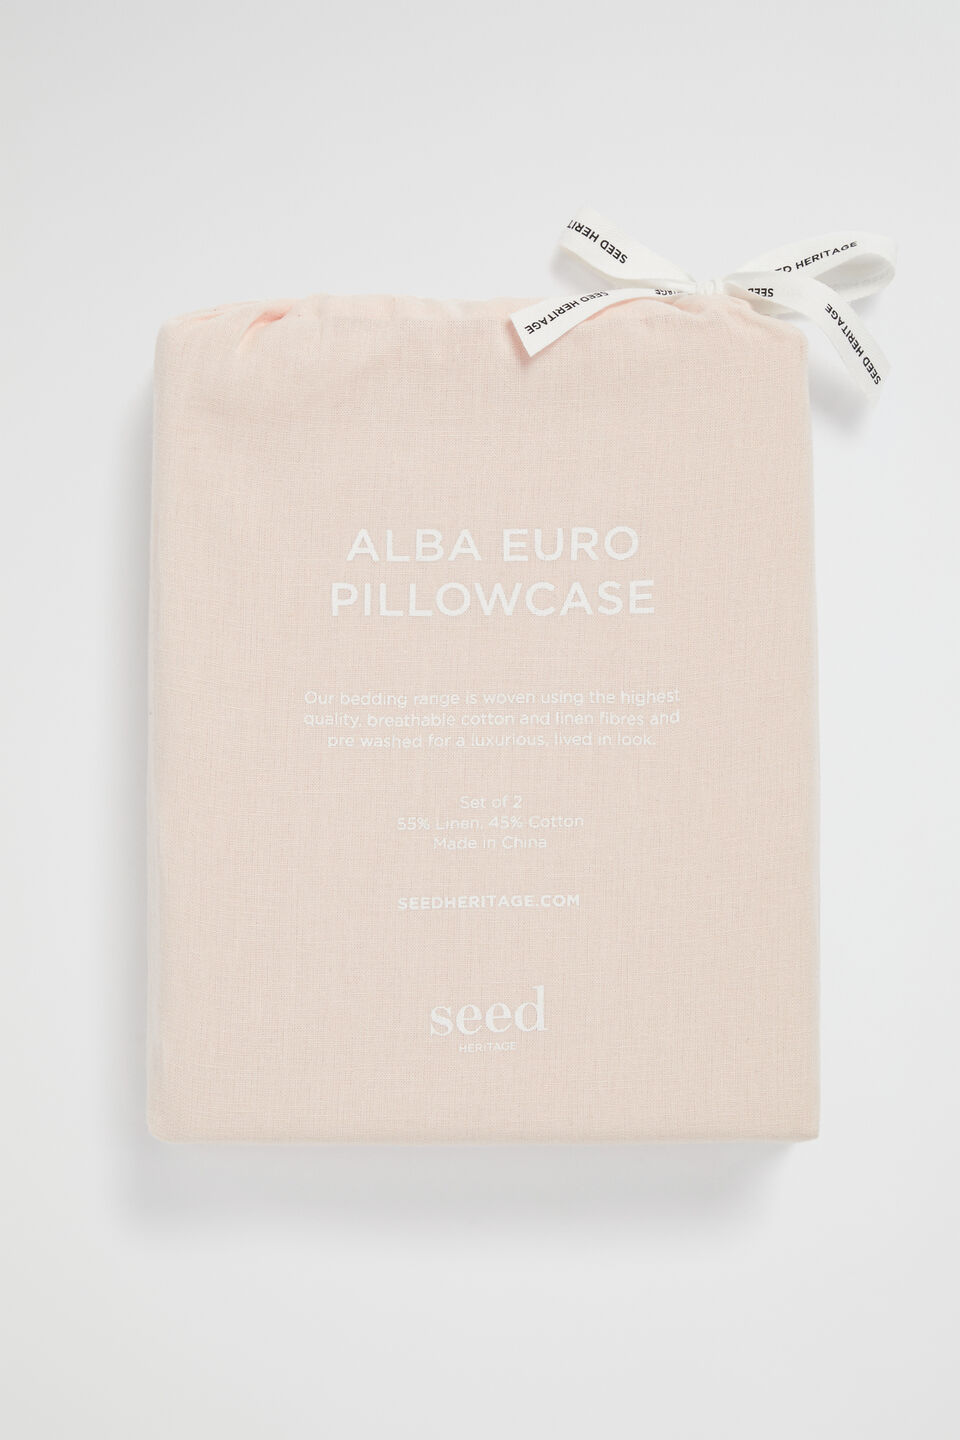 Alba Euro Pillowcase  Blush